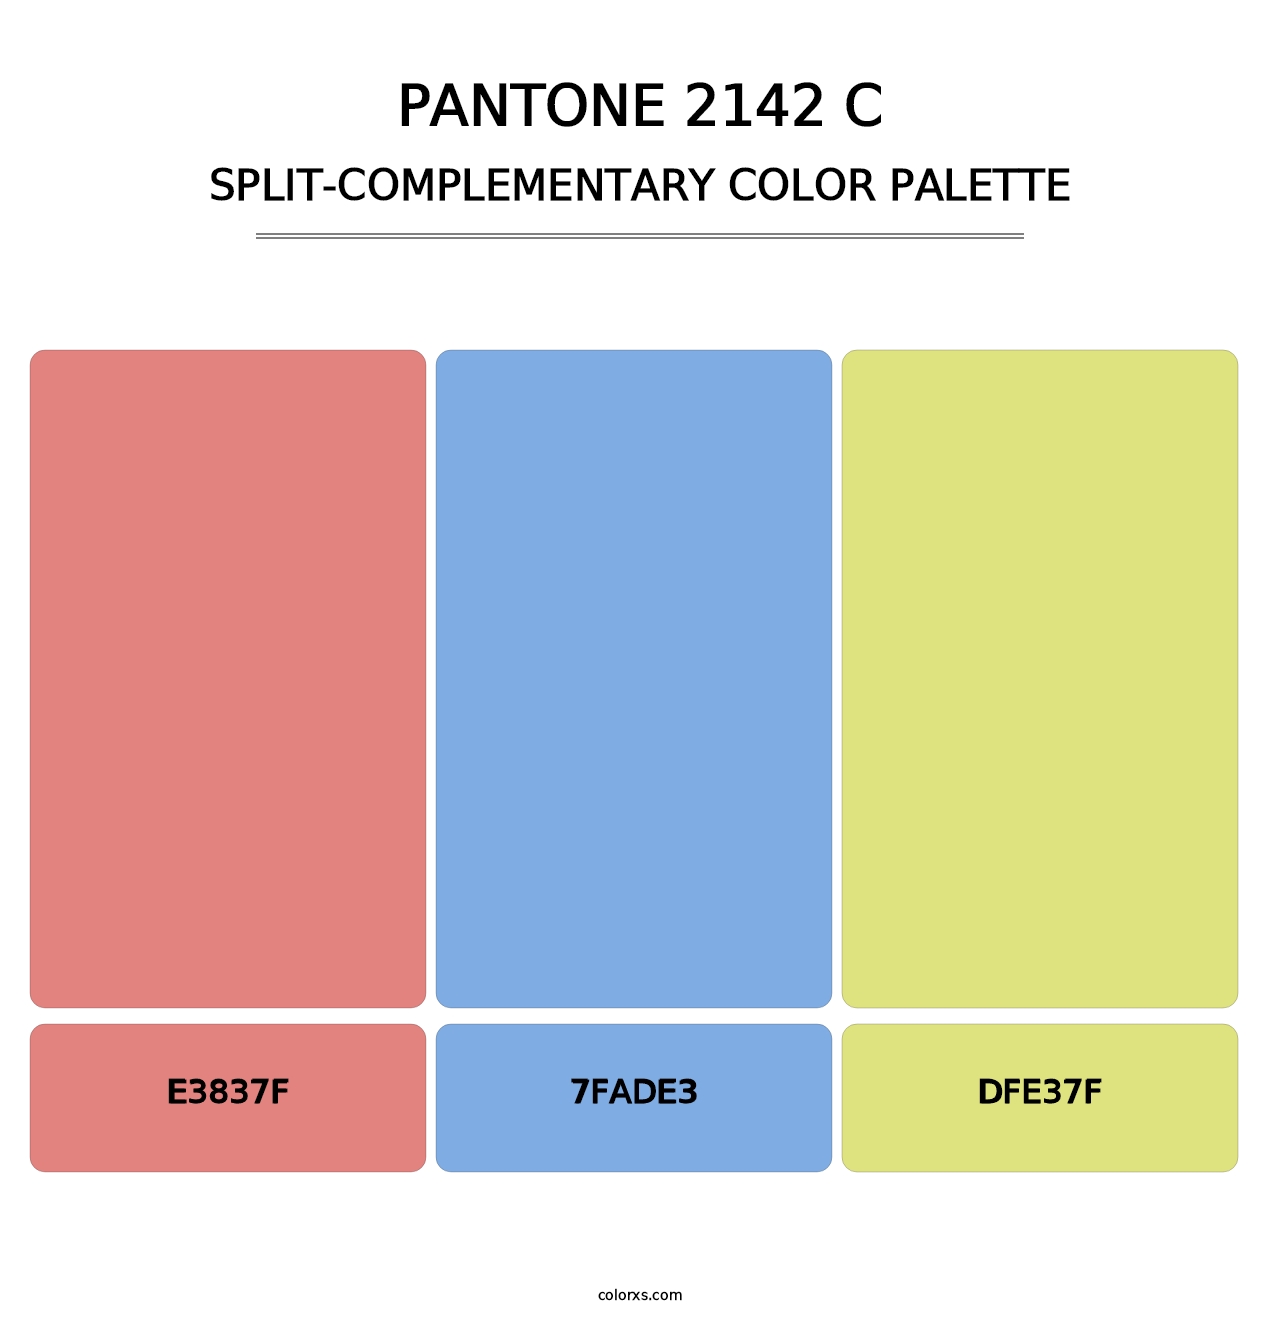 PANTONE 2142 C - Split-Complementary Color Palette